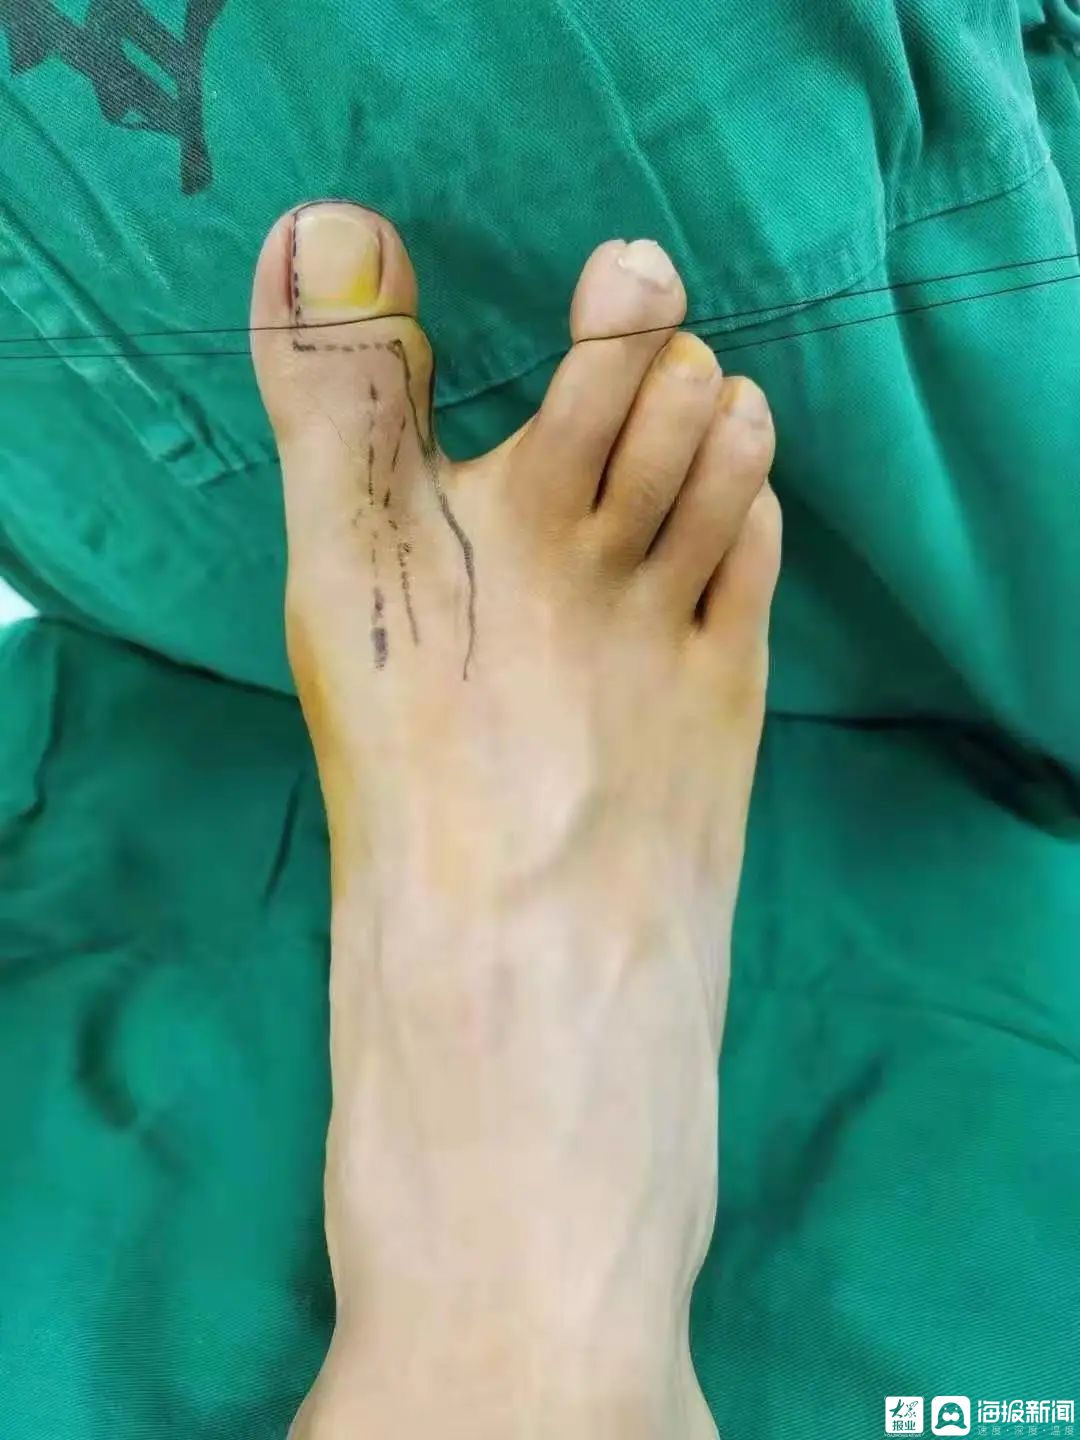 济南市第五人民医院骨科病区成功实施手拇指再造术用精湛医术帮助患者